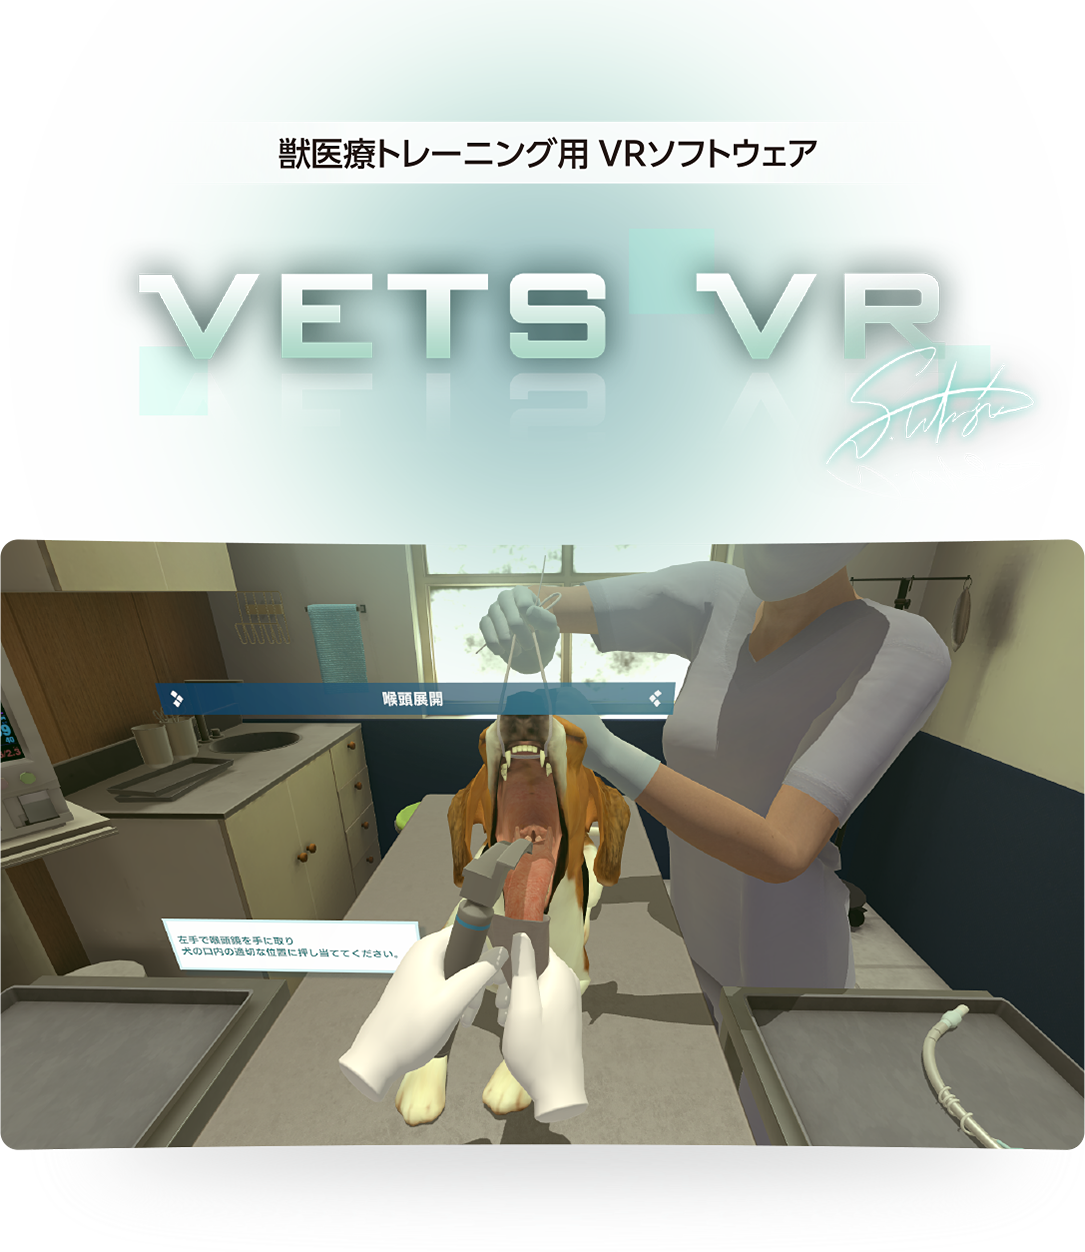 獣医療トレーニング用 VRソフトウェア「VETS VR」